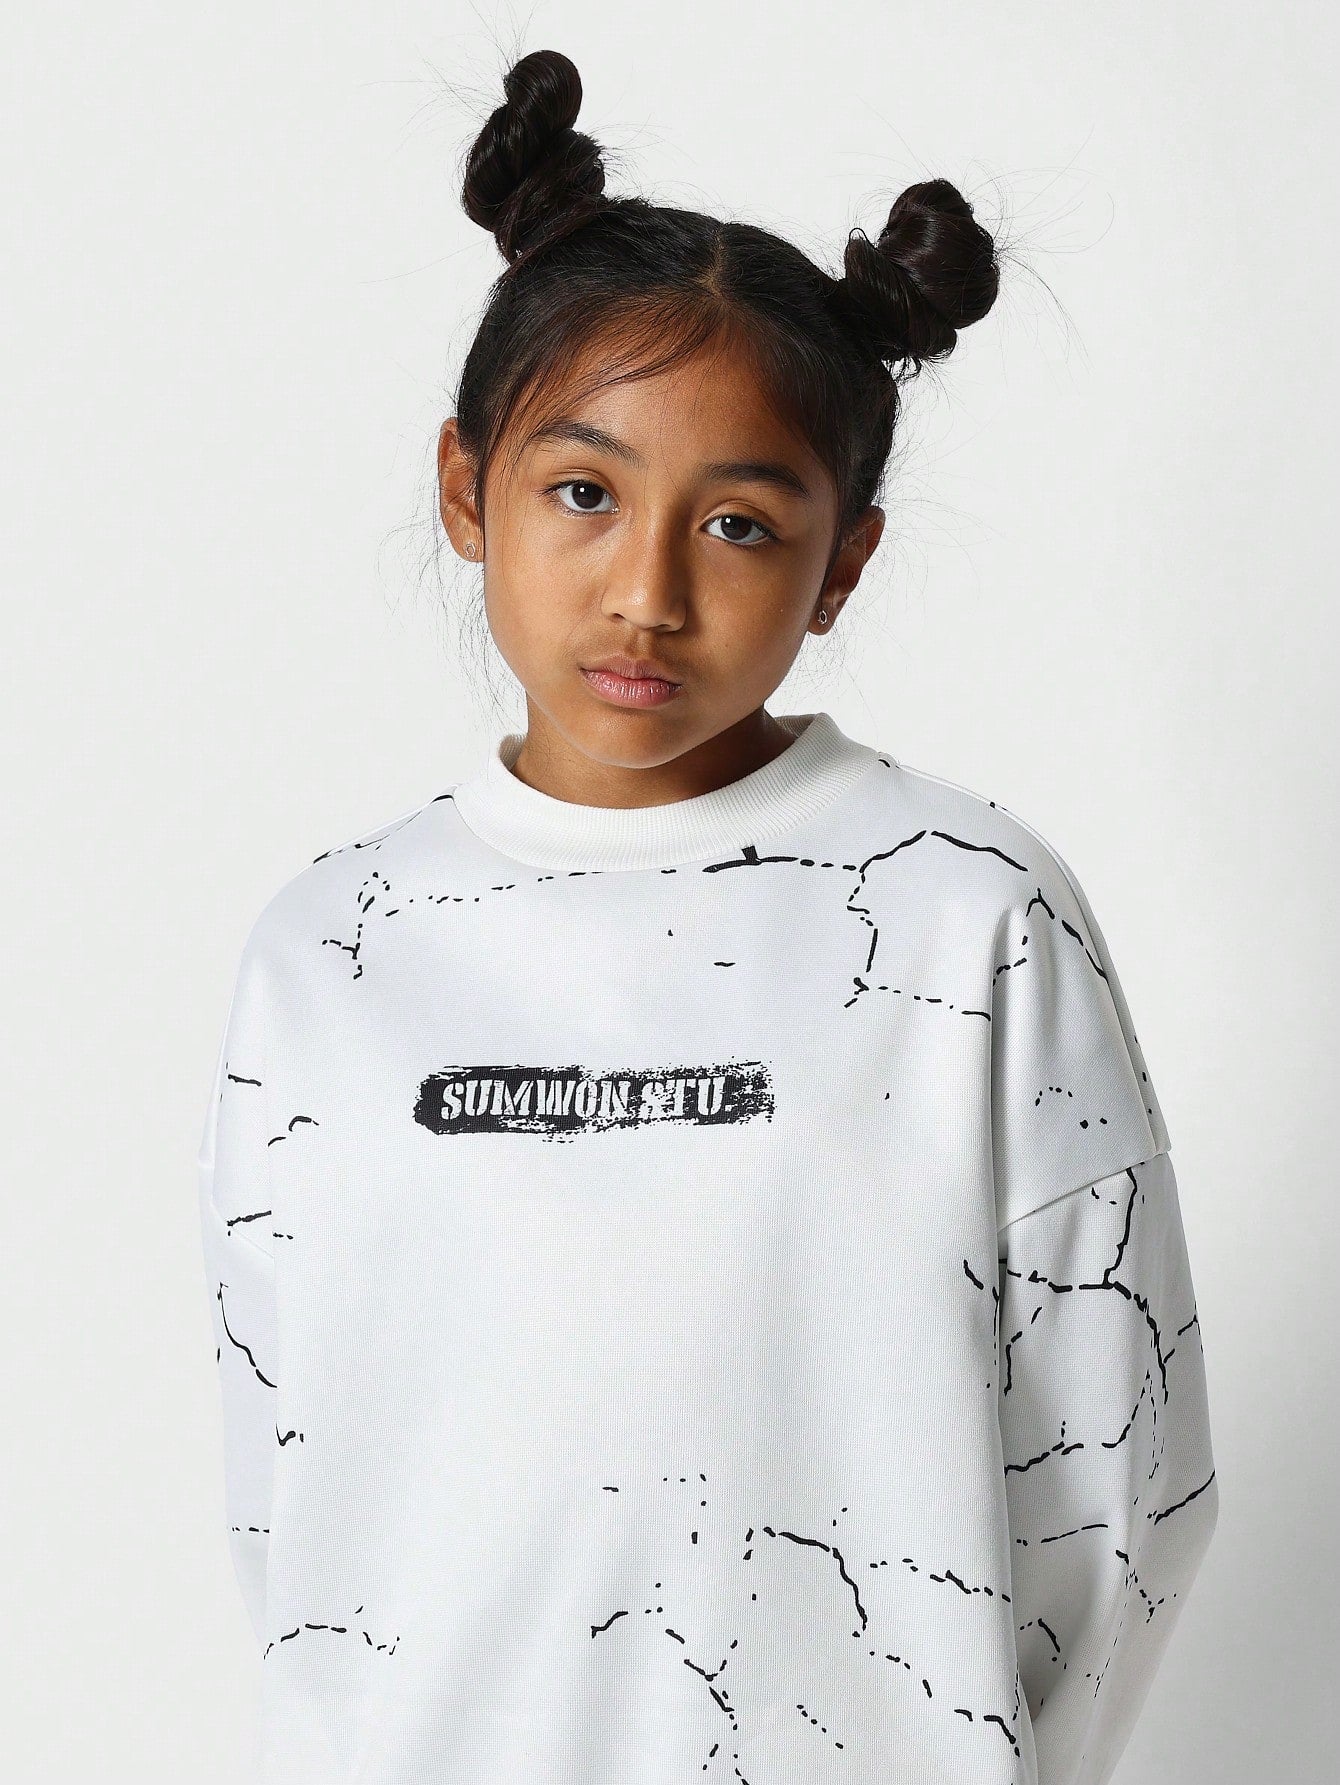 Tween Girls Vintage Crew Neck Sweatshirt With All Over Print Back To School